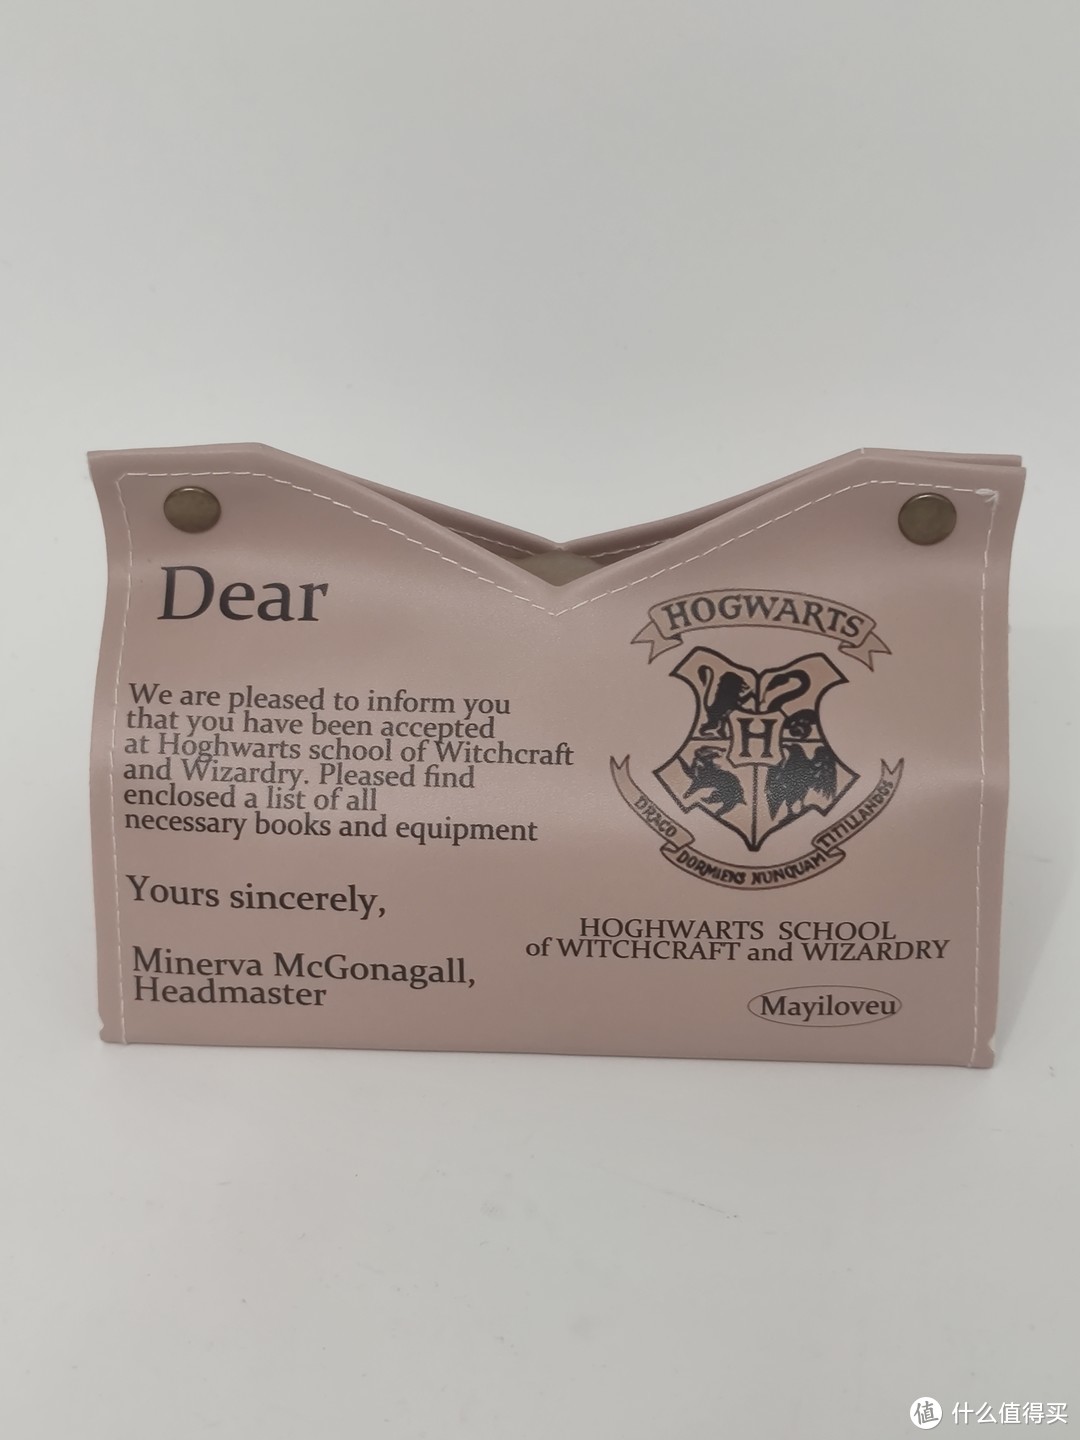 哈利波特餐纸盒——魔法世界的味蕾冒险